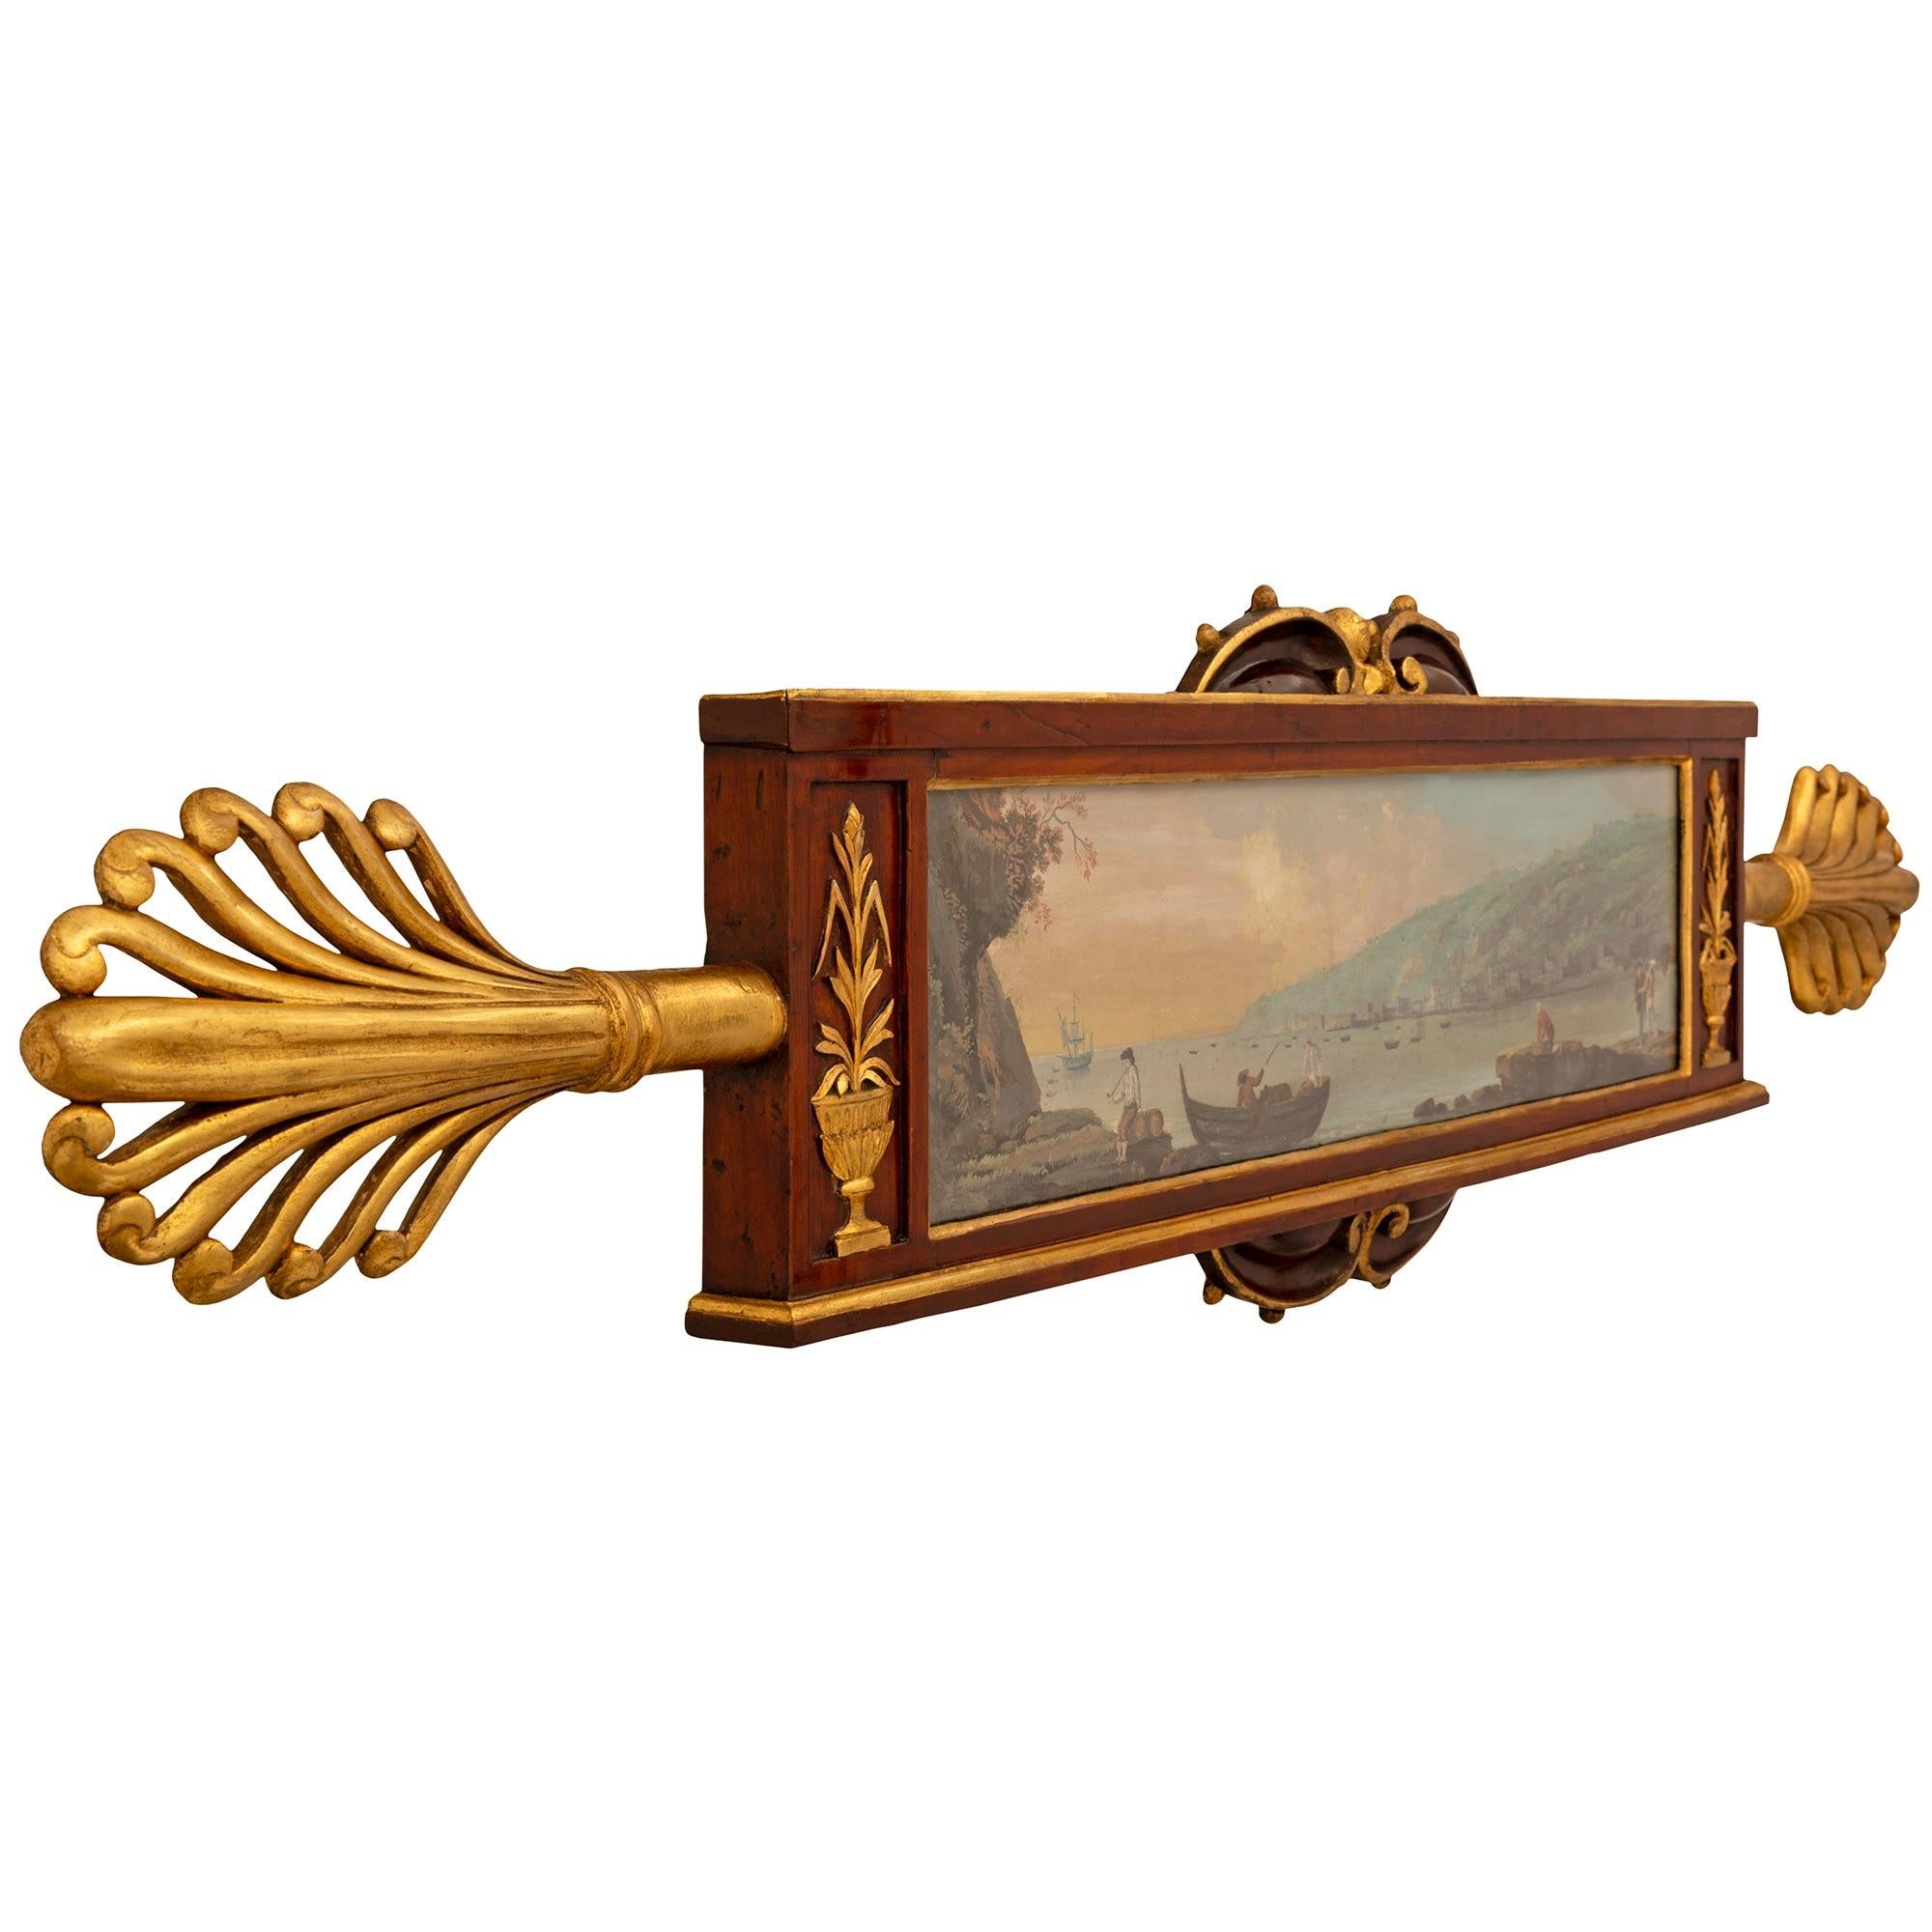 Une paire unique et très décorative de gouaches italiennes néoclassiques napolitaines du début du 19e siècle dans des cadres en noyer et en bois doré. Chaque gouache colorée représente un paysage de pêche avec divers personnages masculins et